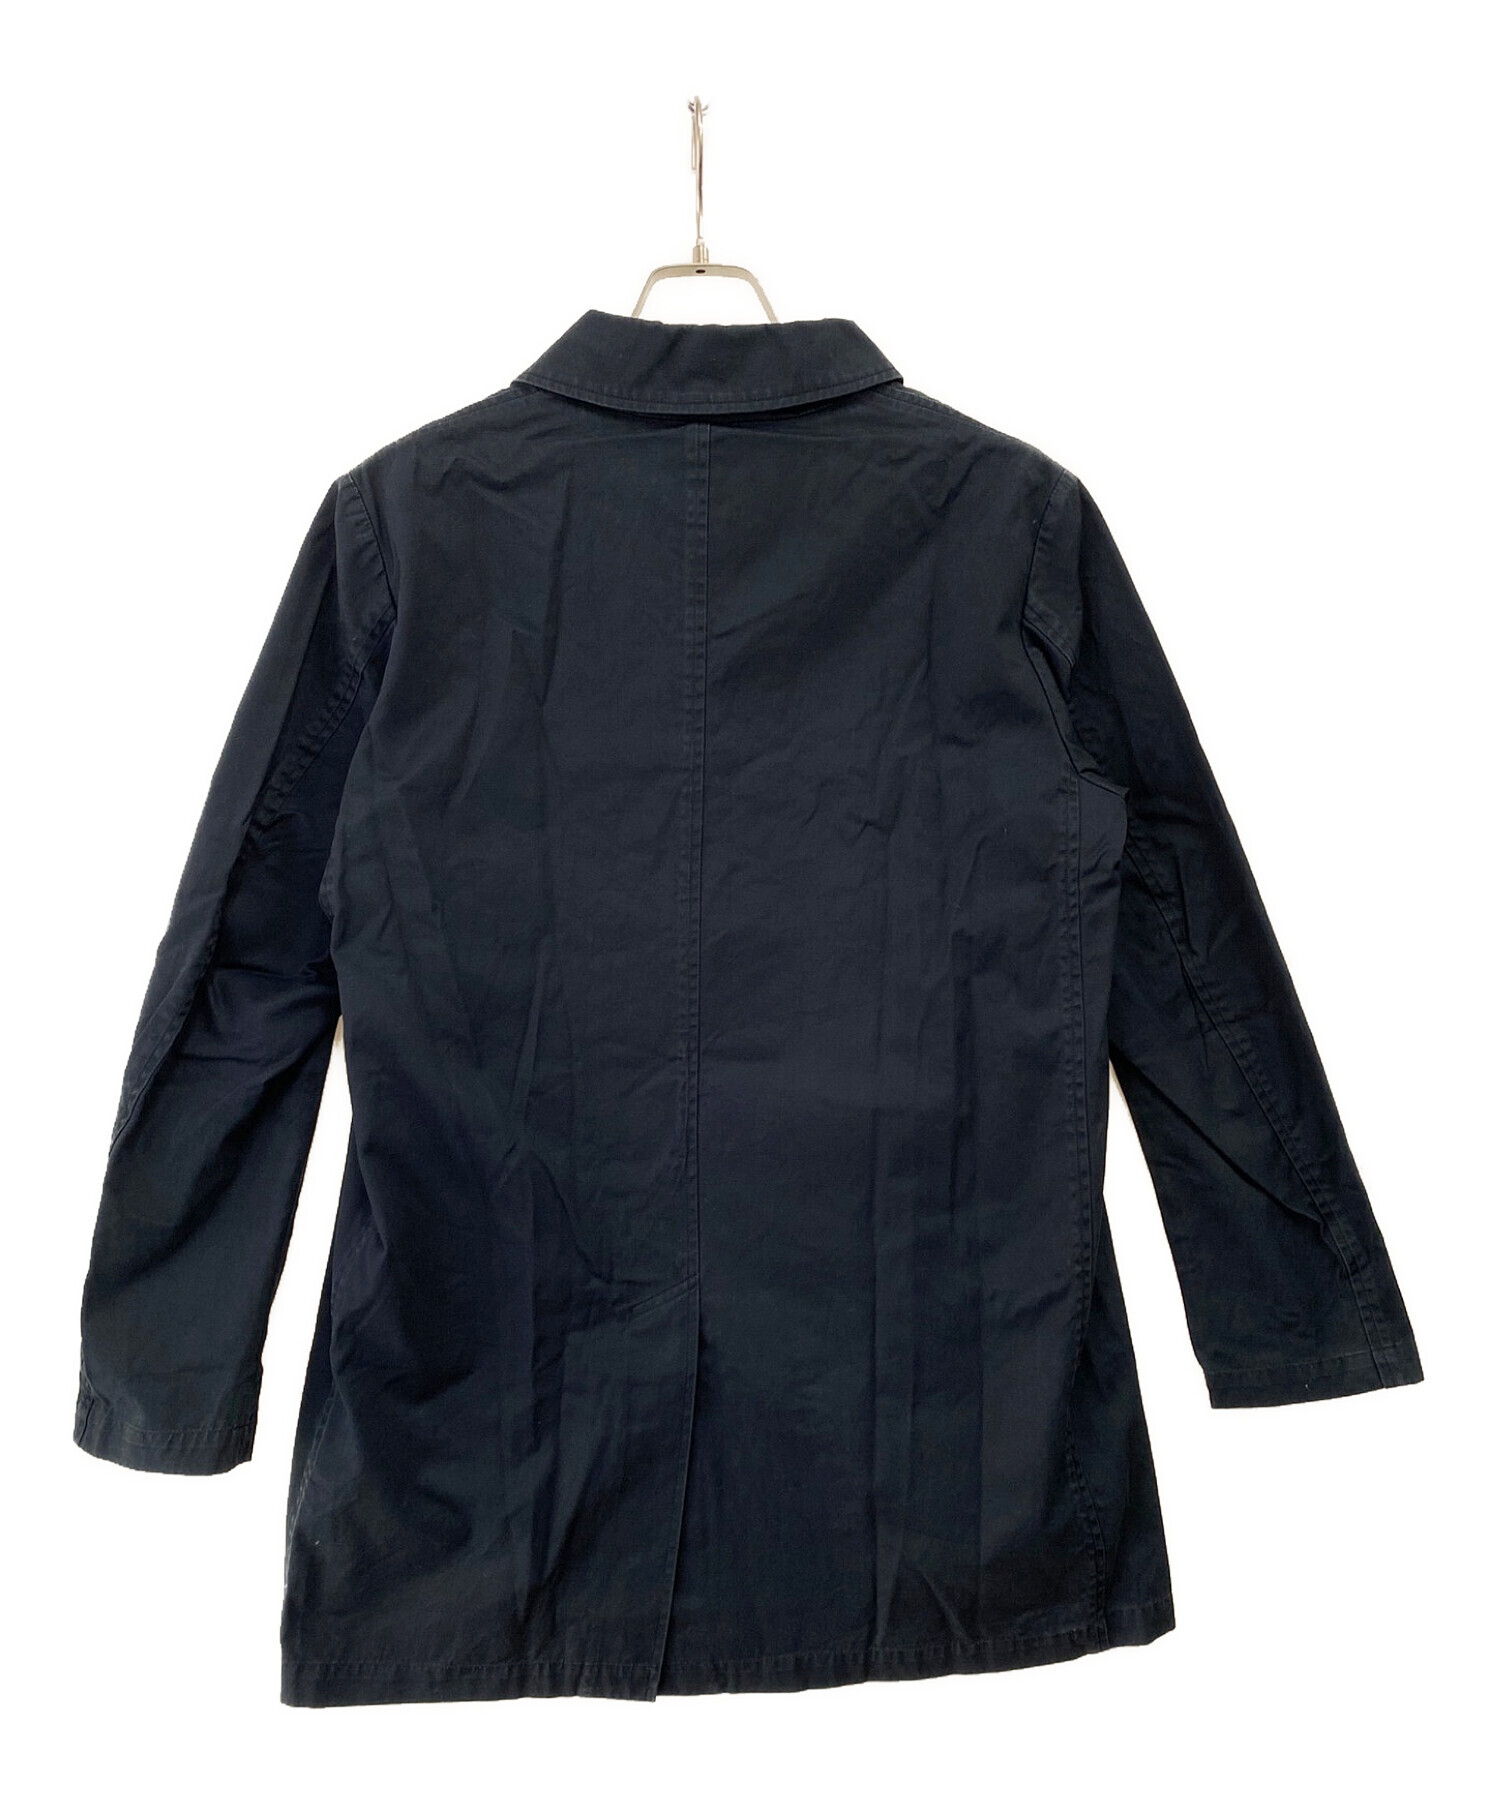 TRADITIONAL WEATHERWEAR ステンカラーコート ネイビージャケット 